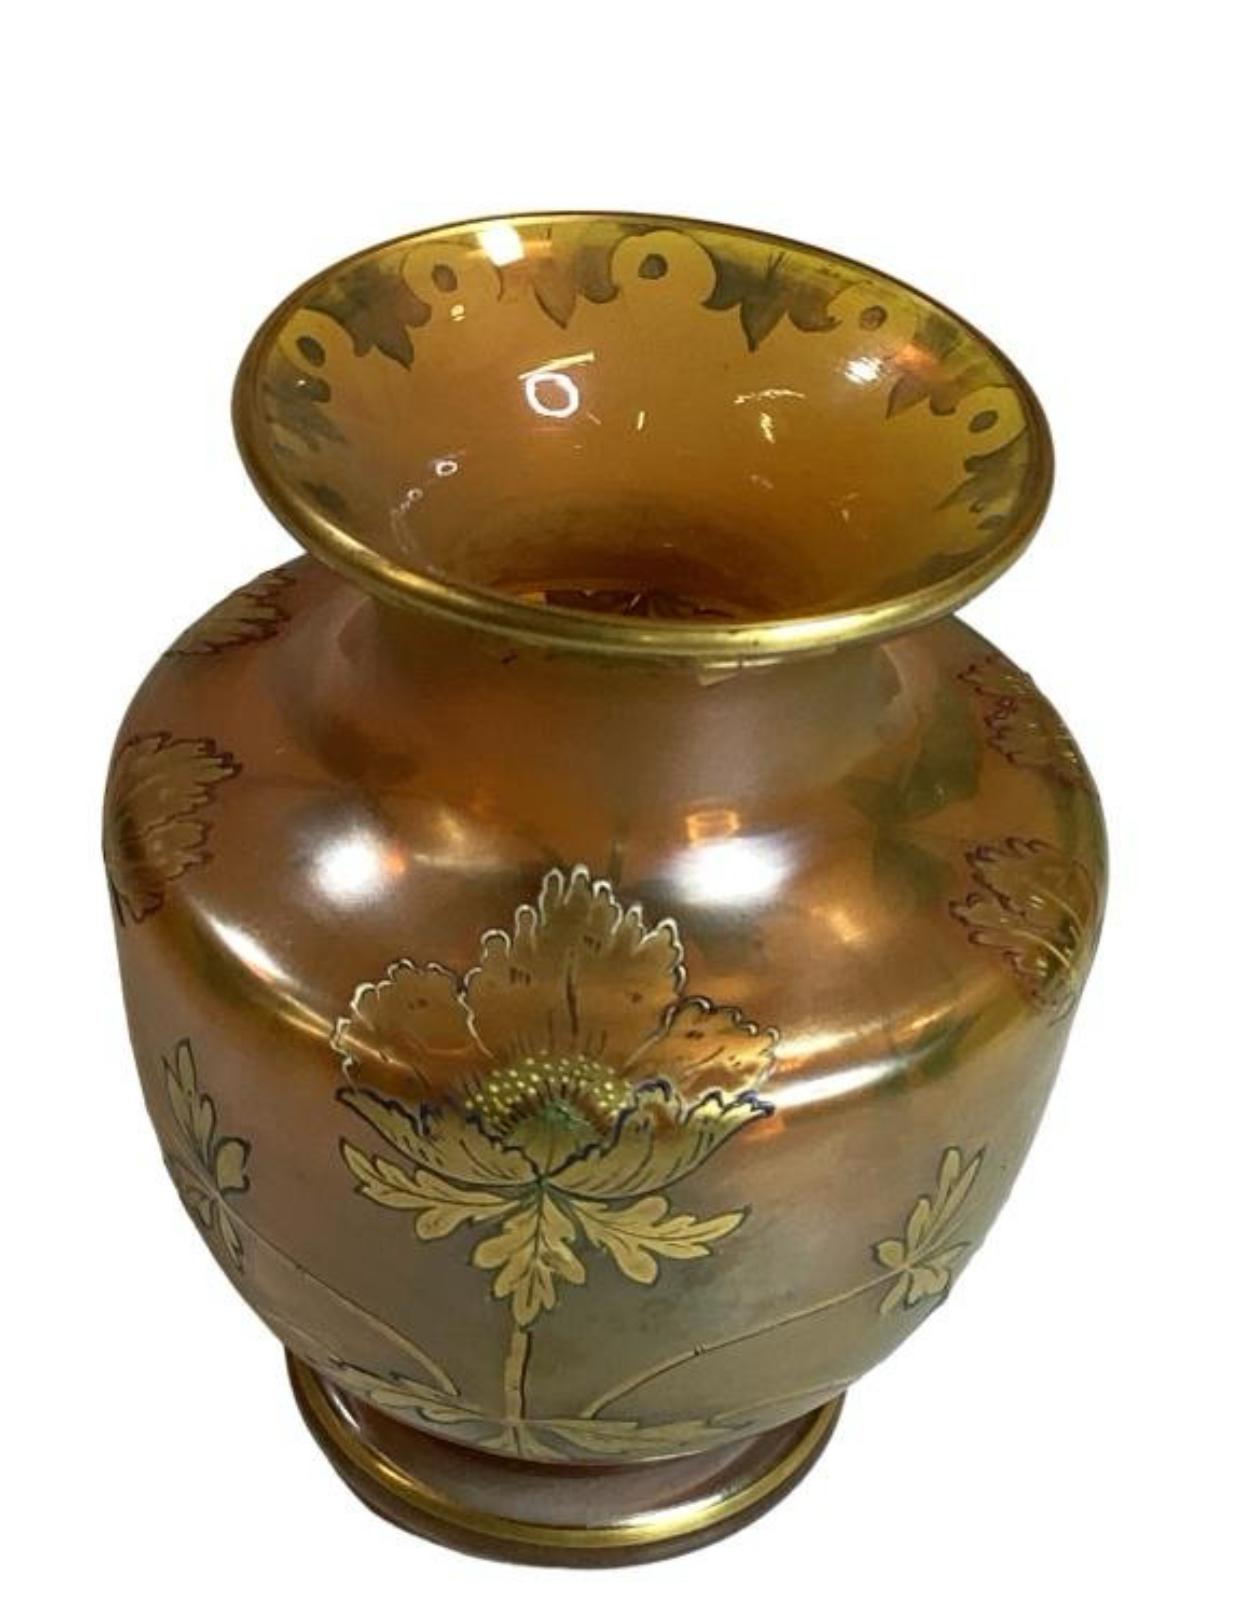 Vase de 4,5 pouces en or irisé avec des feuilles de style Art Nouveau peintes à la main, en bleu doré et gravé, bord légèrement évasé. Belle couleur

Située à Warmbrunn, en Silésie, l'entreprise Heckert a joué un rôle important dans l'industrie du